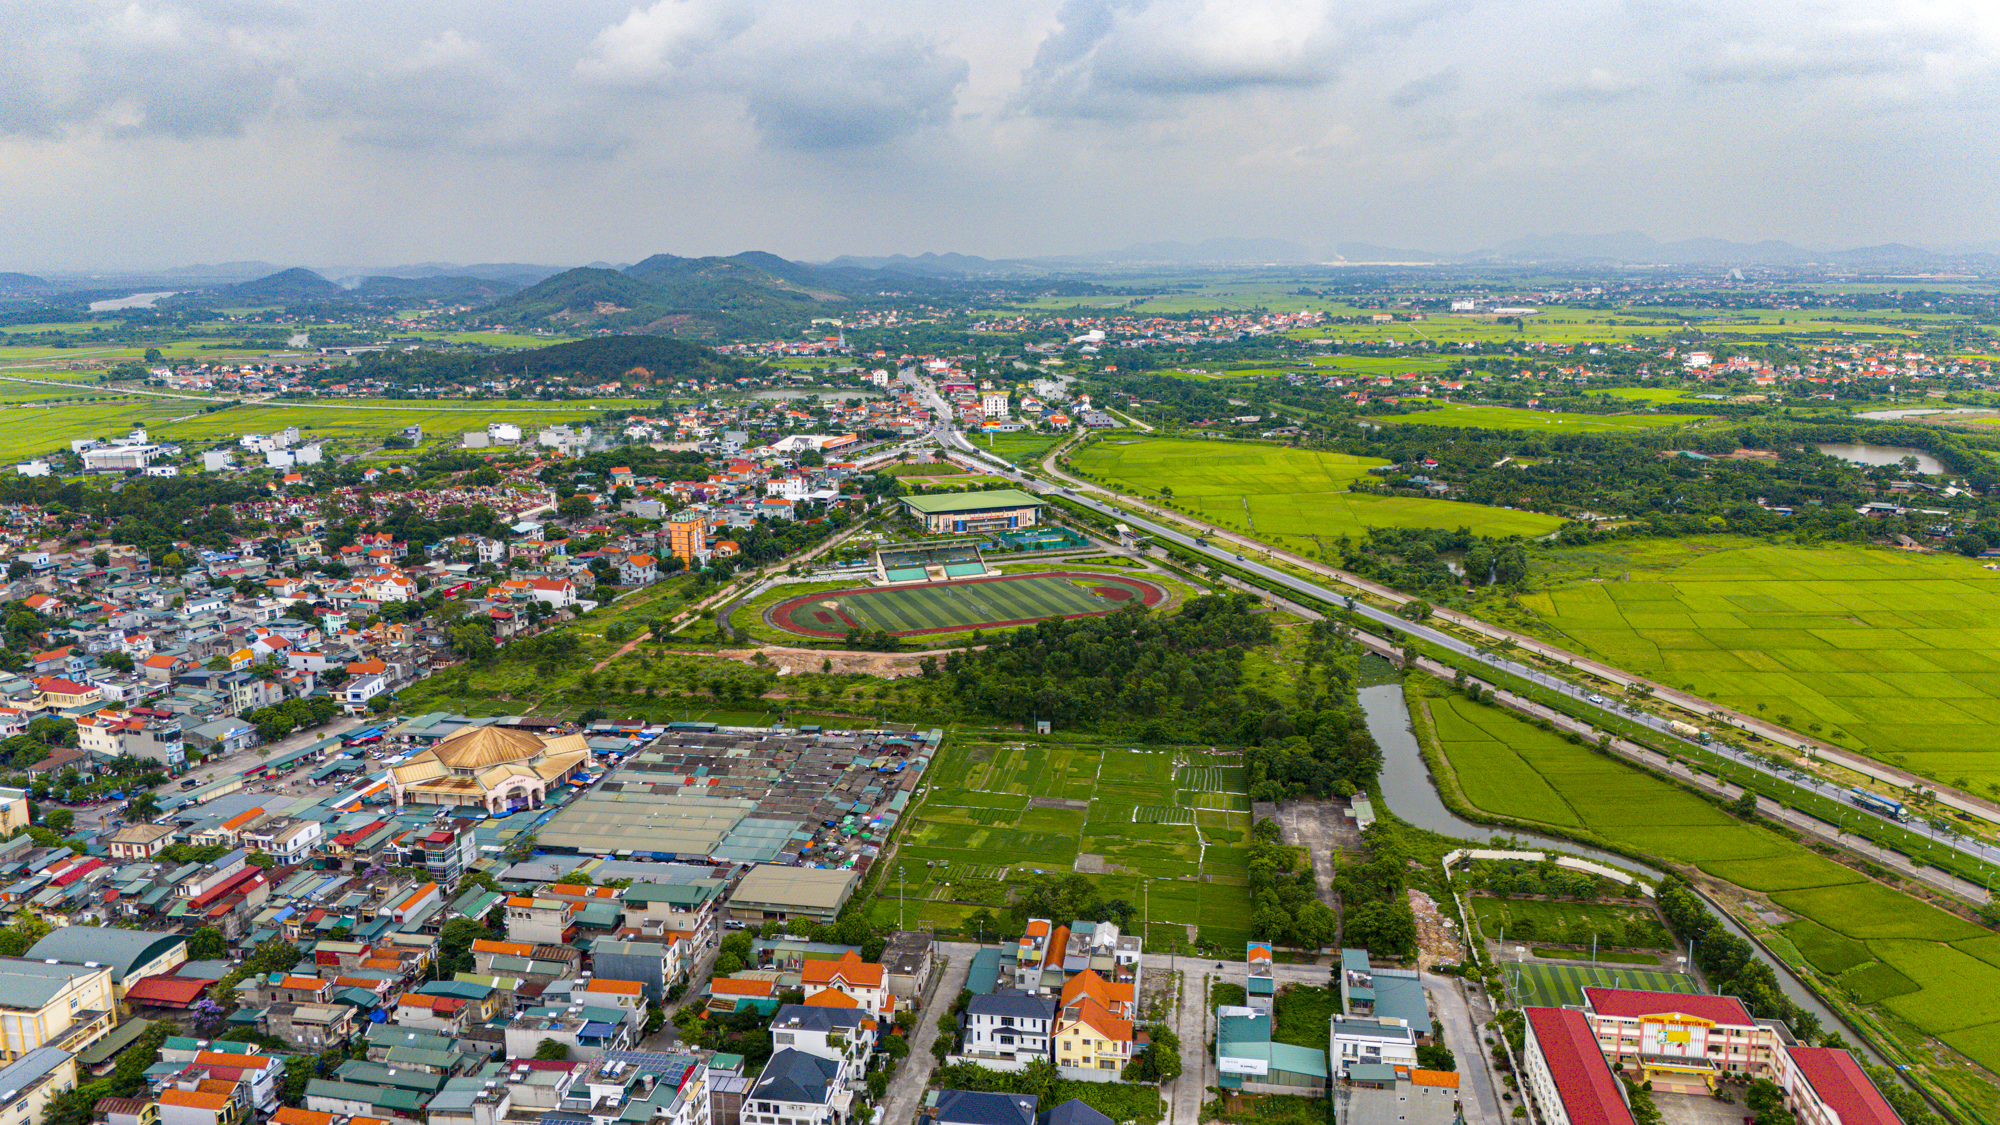 Diện mạo thị xã nằm ở giao điểm tam giác kinh tế Hà Nội - Hải Phòng - Quảng Ninh, có thể đưa tỉnh giáp biên giới trở thành tỉnh có nhiều thành phố nhất- Ảnh 5.